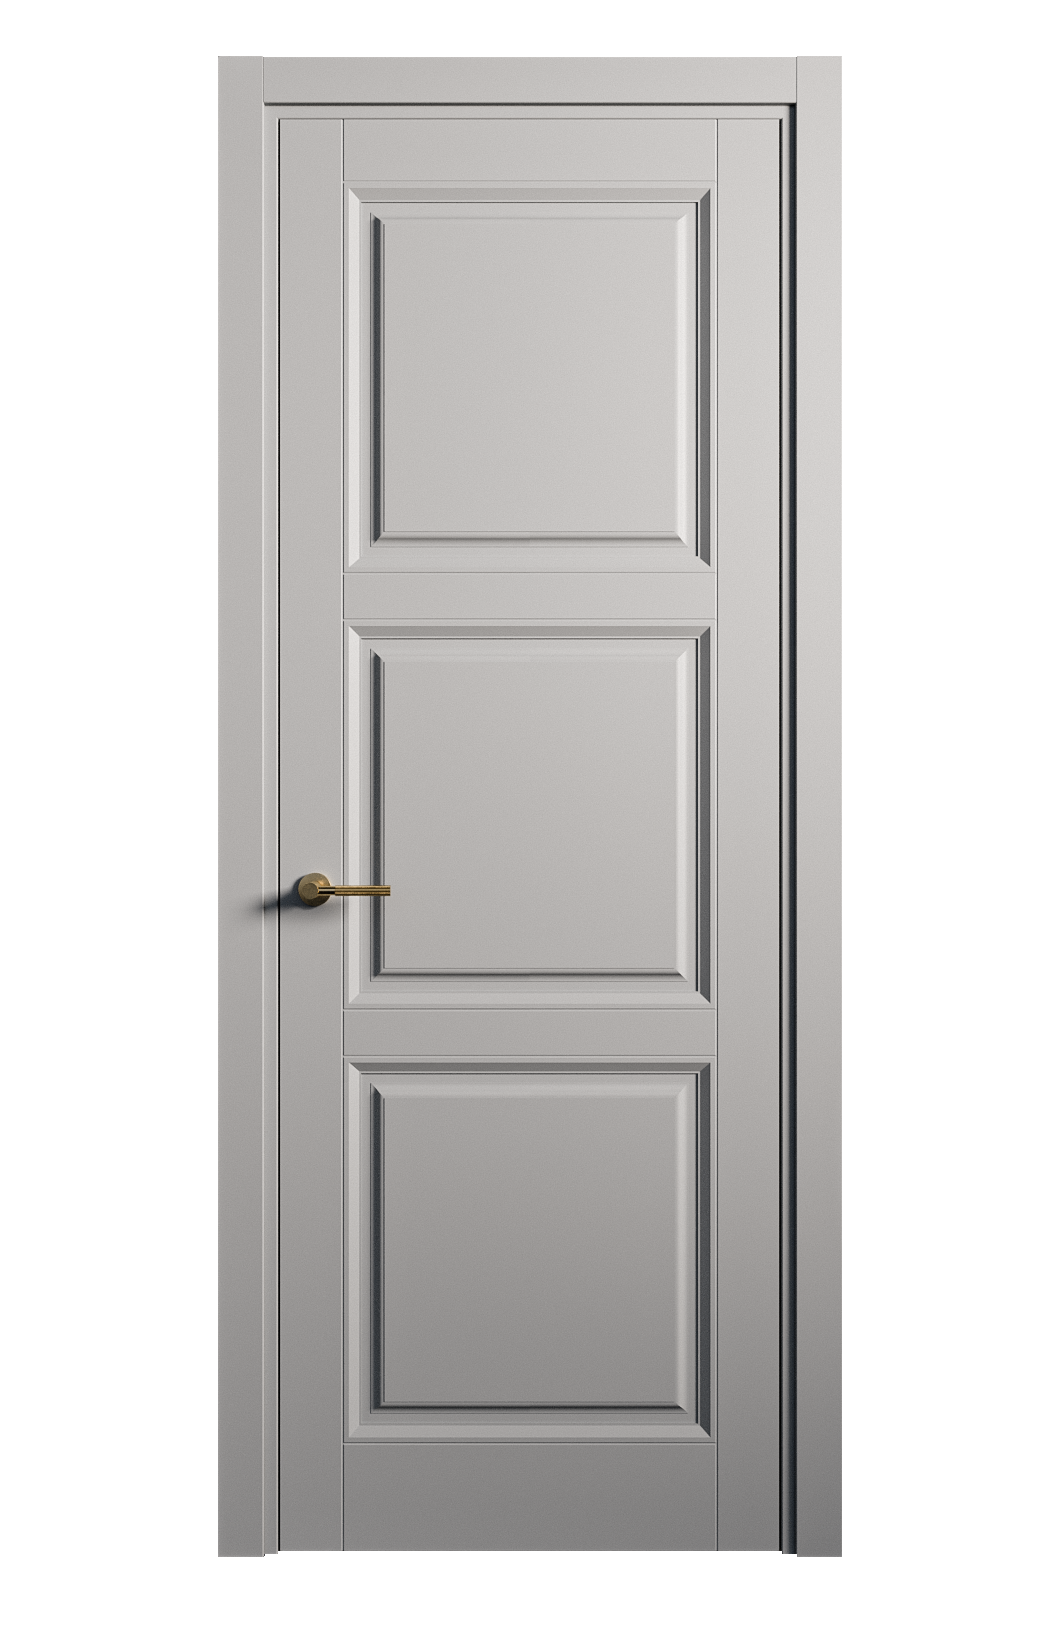 Межкомнатная дверь Venezia-3 глухая эмаль ral 7040 25771